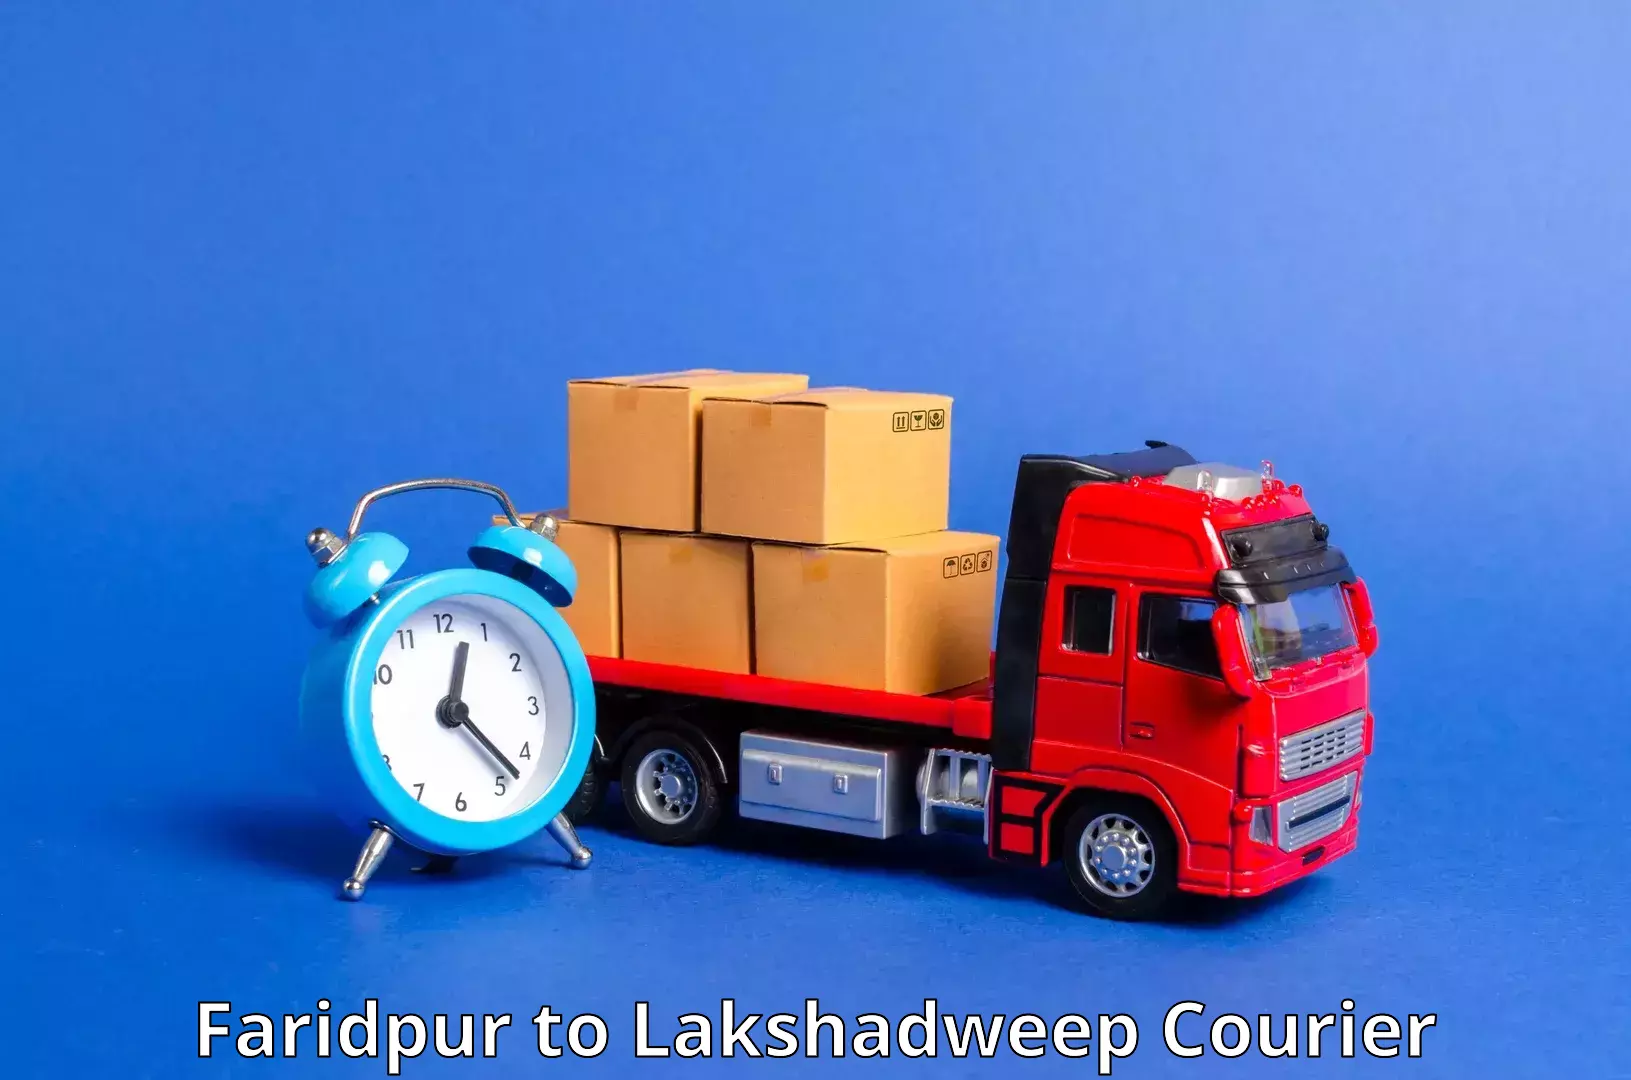 Tech-enabled shipping Faridpur to Lakshadweep